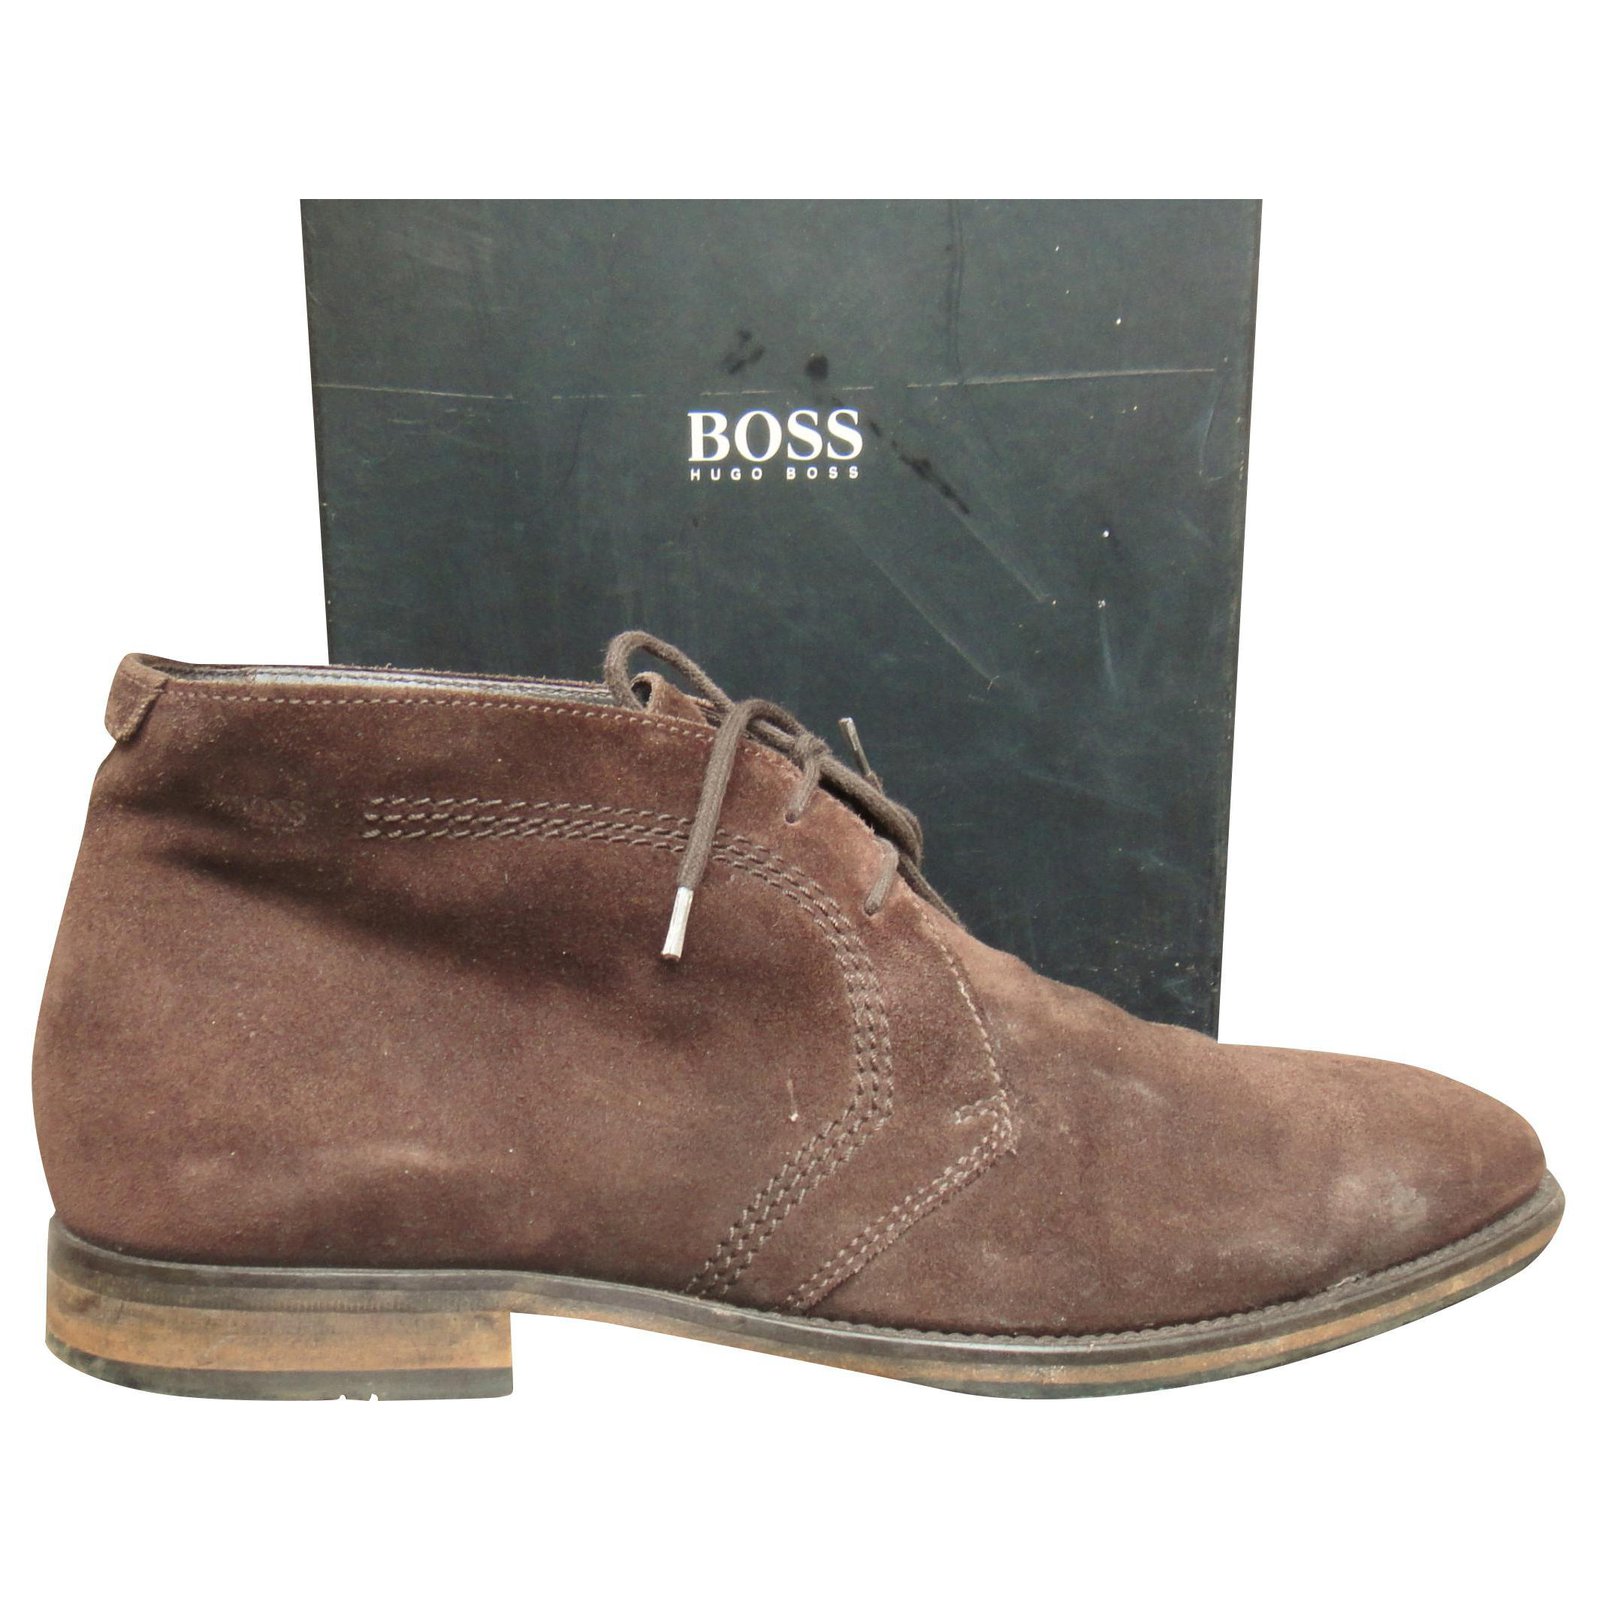 hugo boss boot